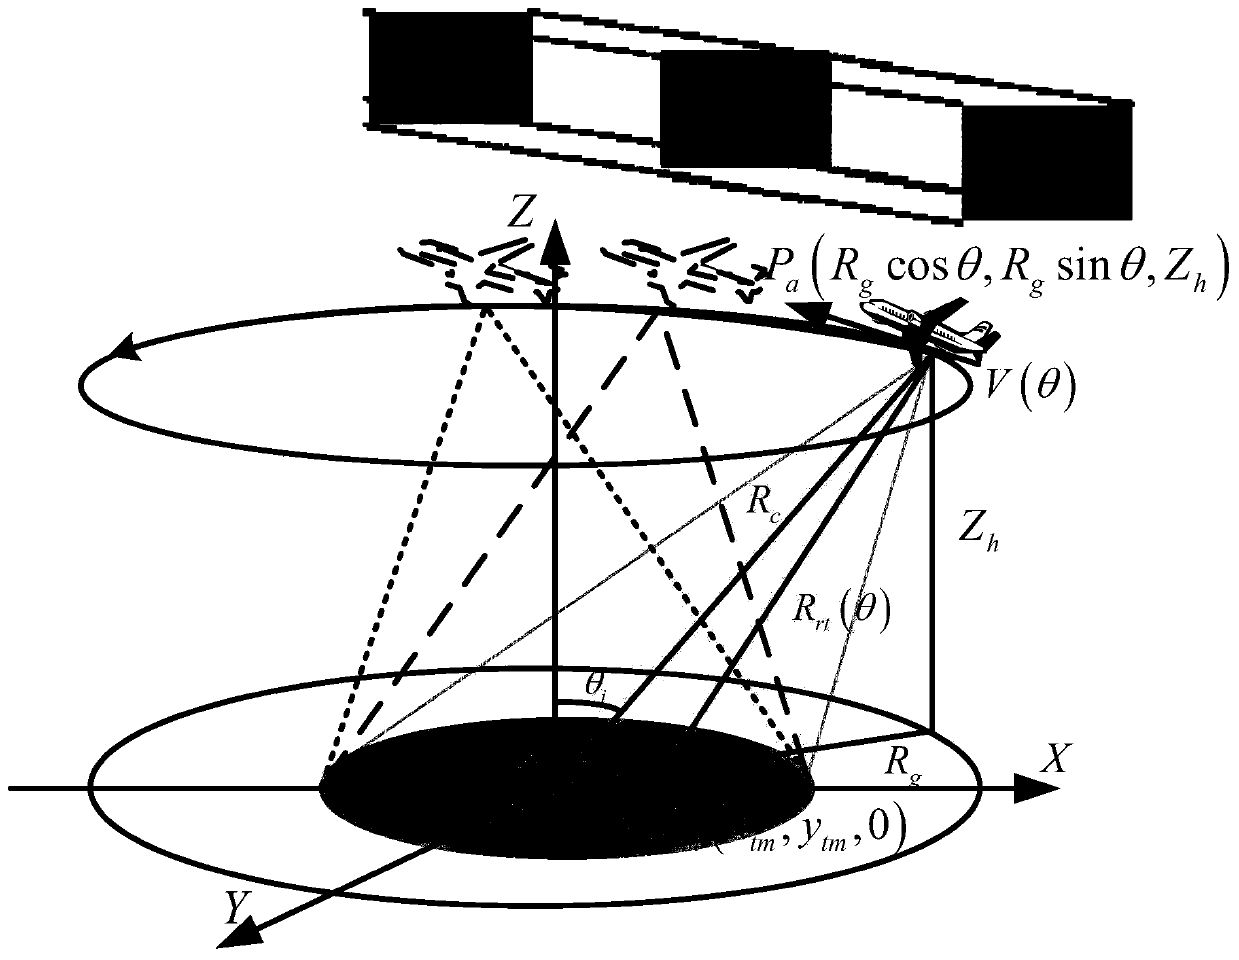 Circumference SAR multi-target tracking method based on random finite set